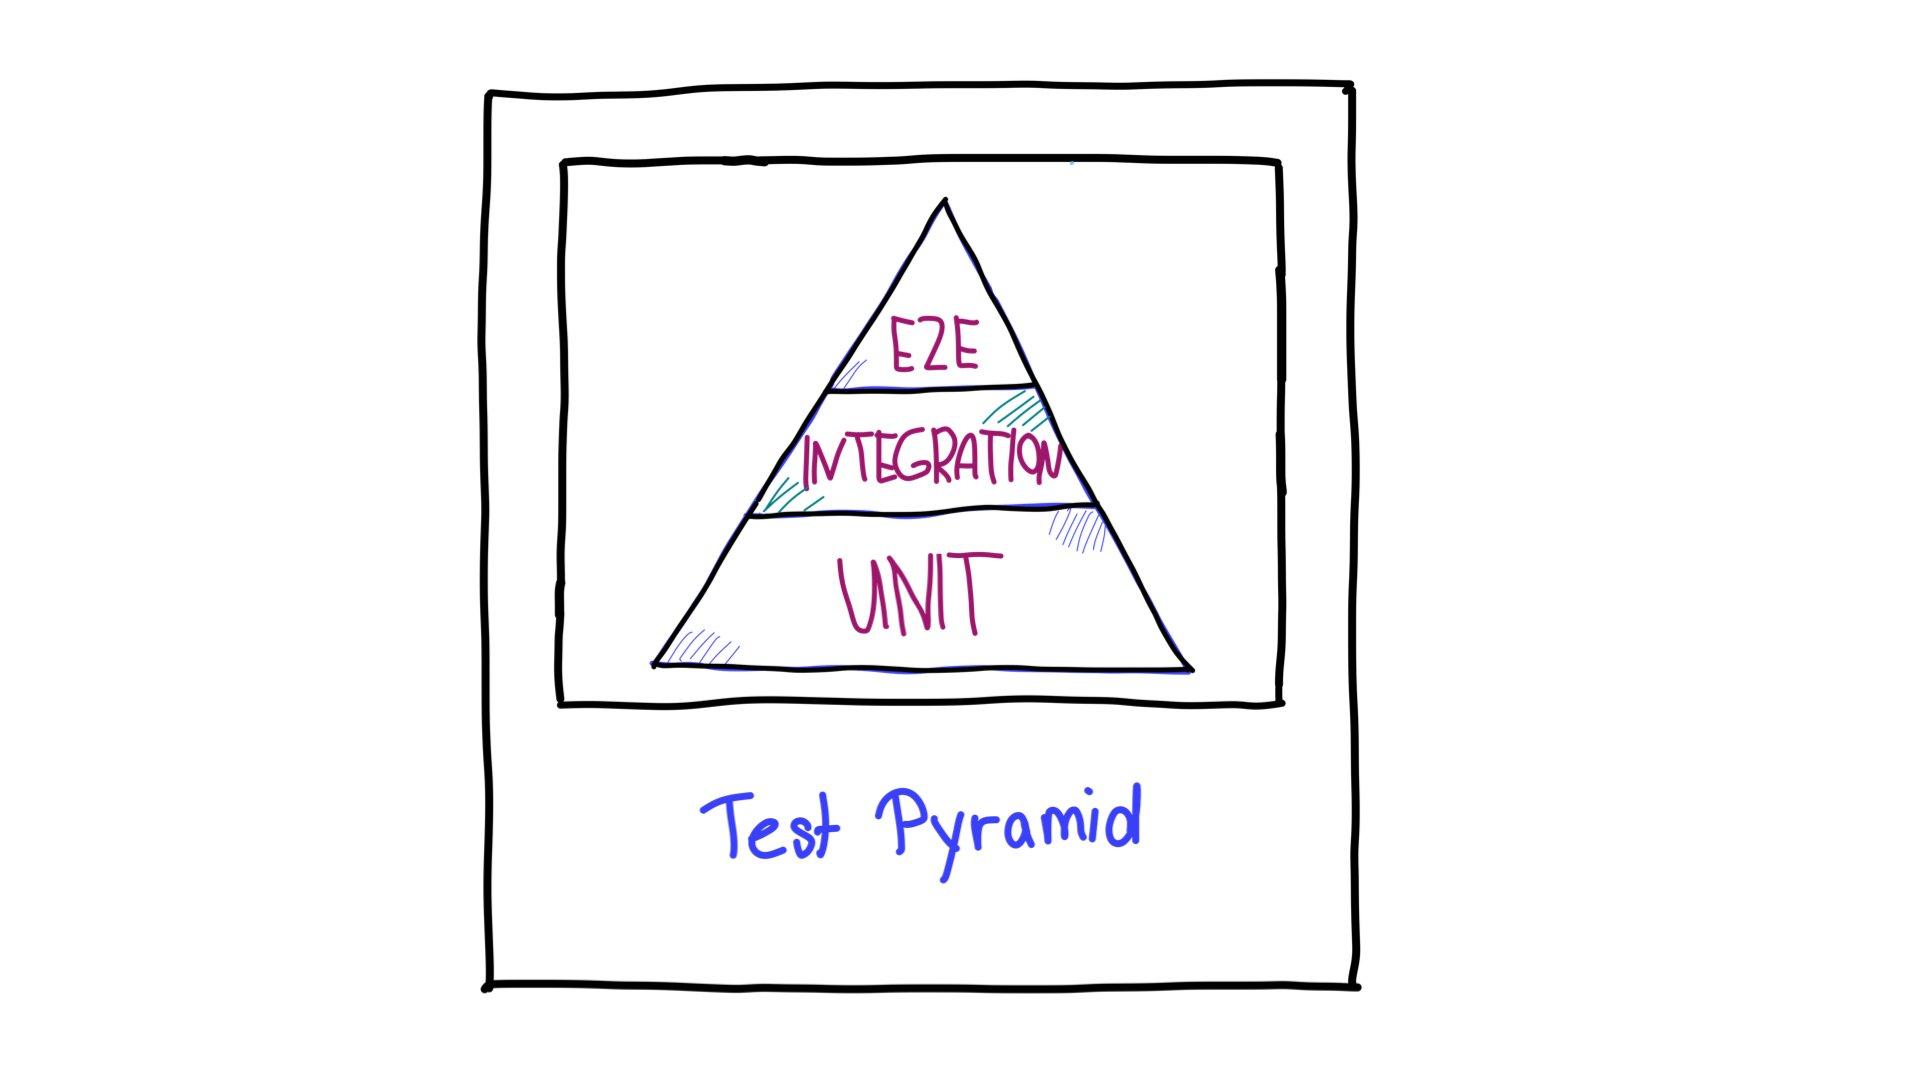 A pirâmide de teste, com testes de ponta a ponta (E2E) na parte superior, testes de integração no meio e testes de unidade na parte inferior.